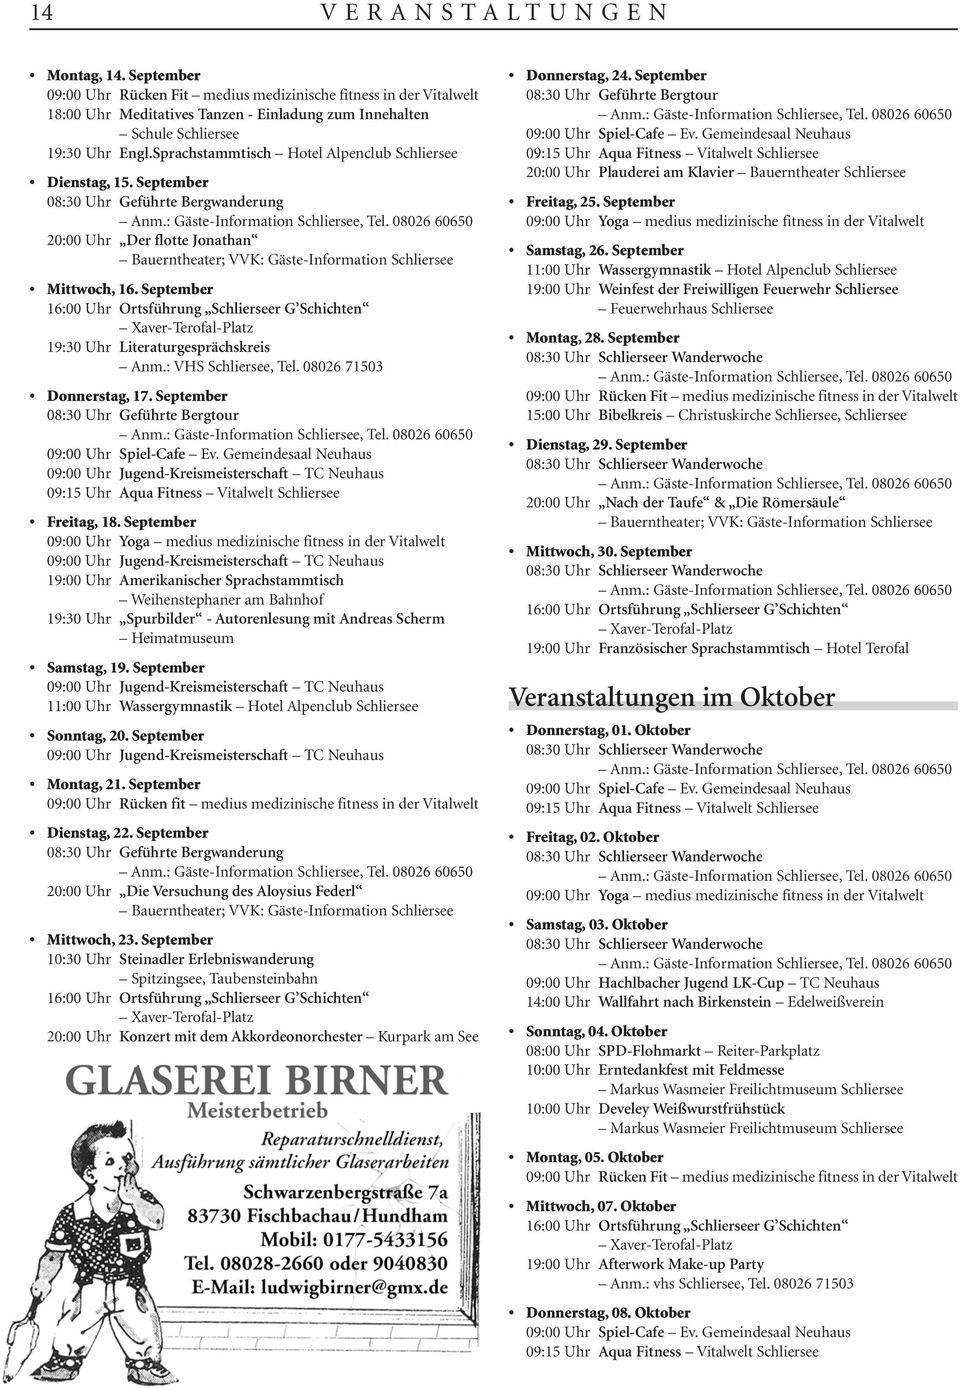 September 16:00 Uhr Ortsführung Schlierseer G Schichten Xaver-Terofal-Platz 19:30 Uhr Literaturgesprächskreis Anm.: VHS Schliersee, Tel. 08026 71503 Donnerstag, 17.